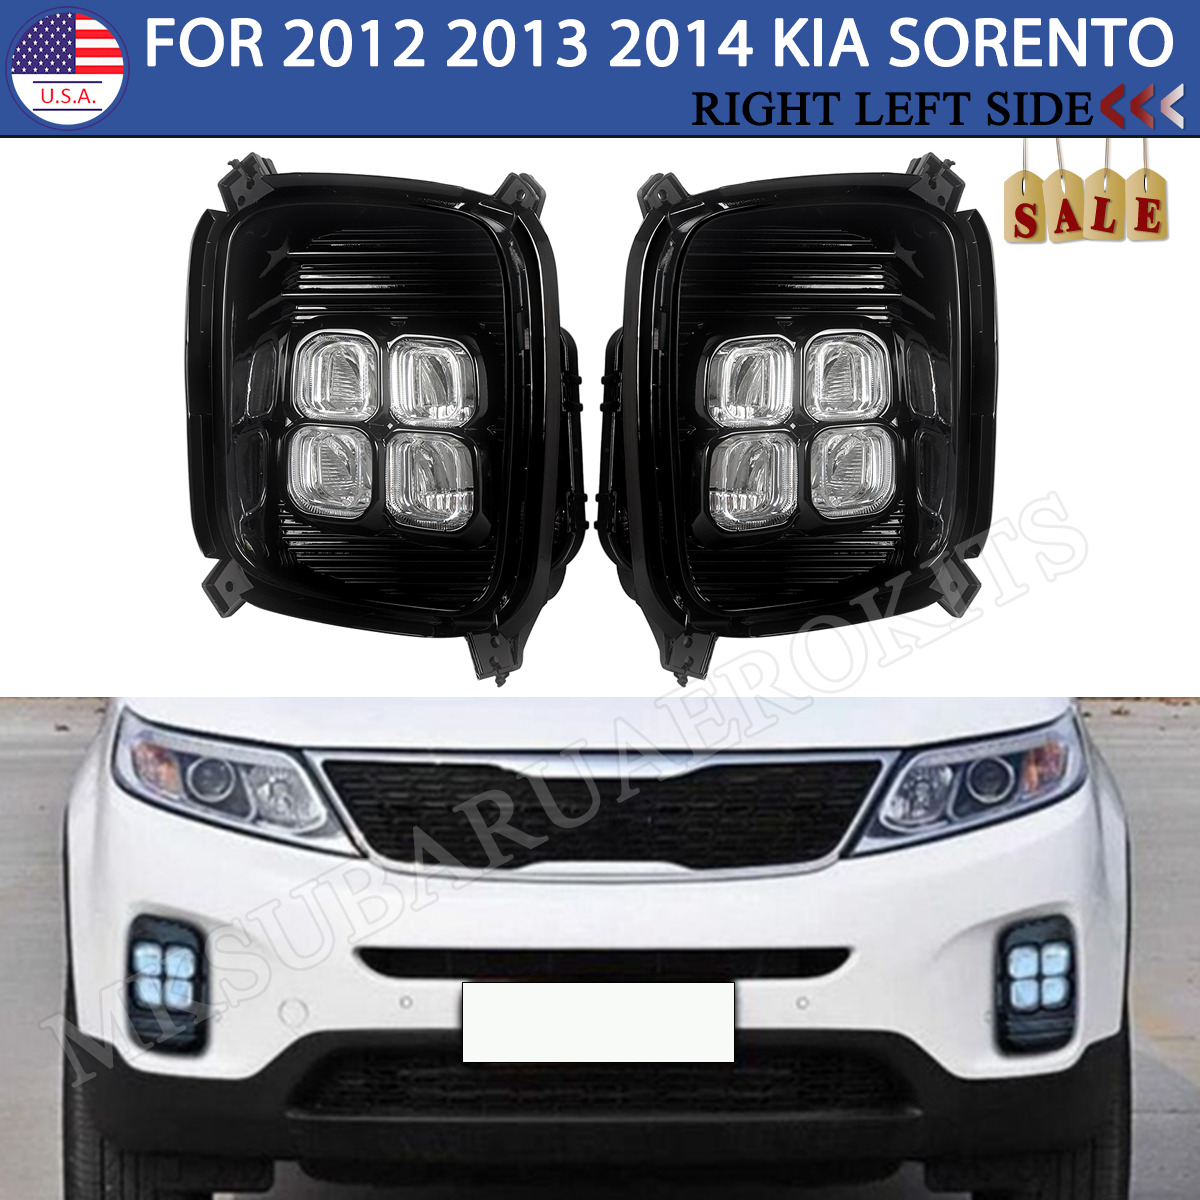 For 2012-14 Kia Sorento DRL LED Front Fog Lamp Daytime Running Light Left Right